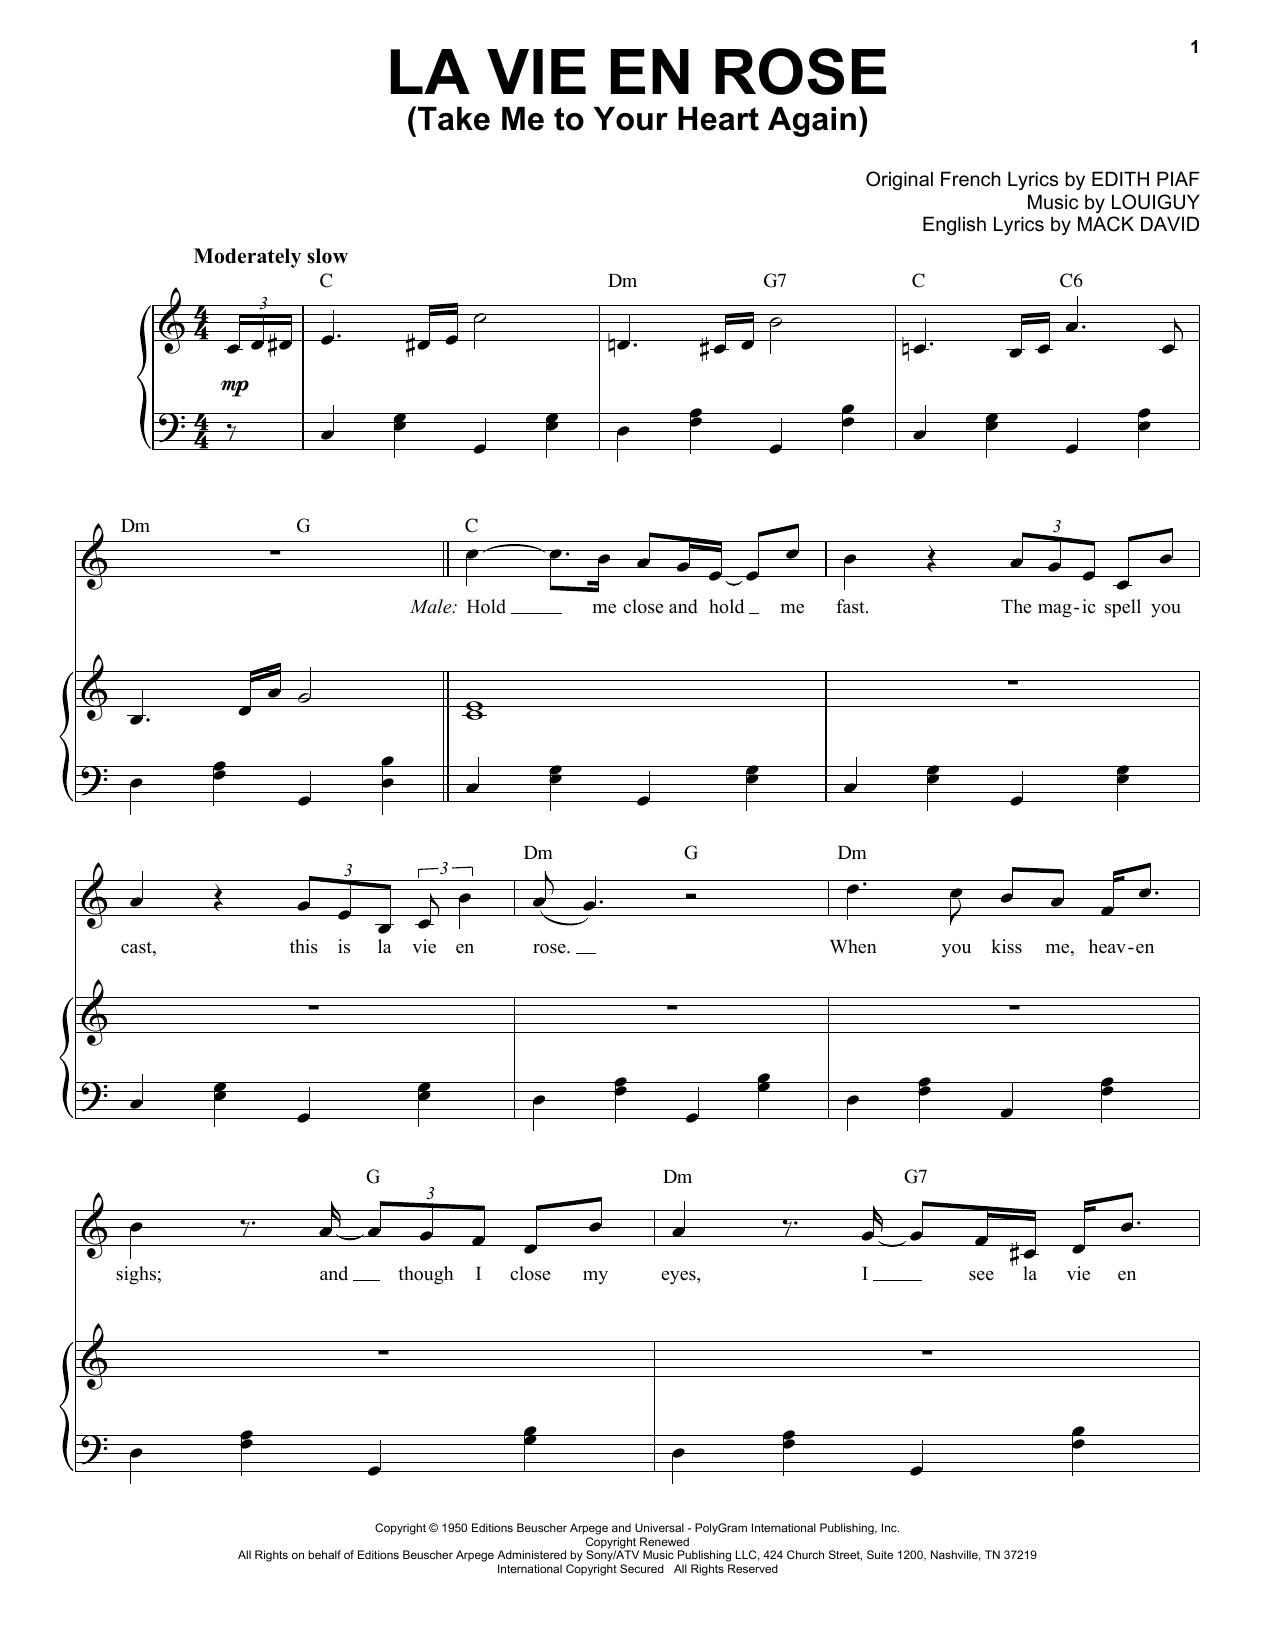 Michael Bublé La vie en rose (feat. Cécile McLorin Salvant) sheet music notes and chords arranged for Piano & Vocal